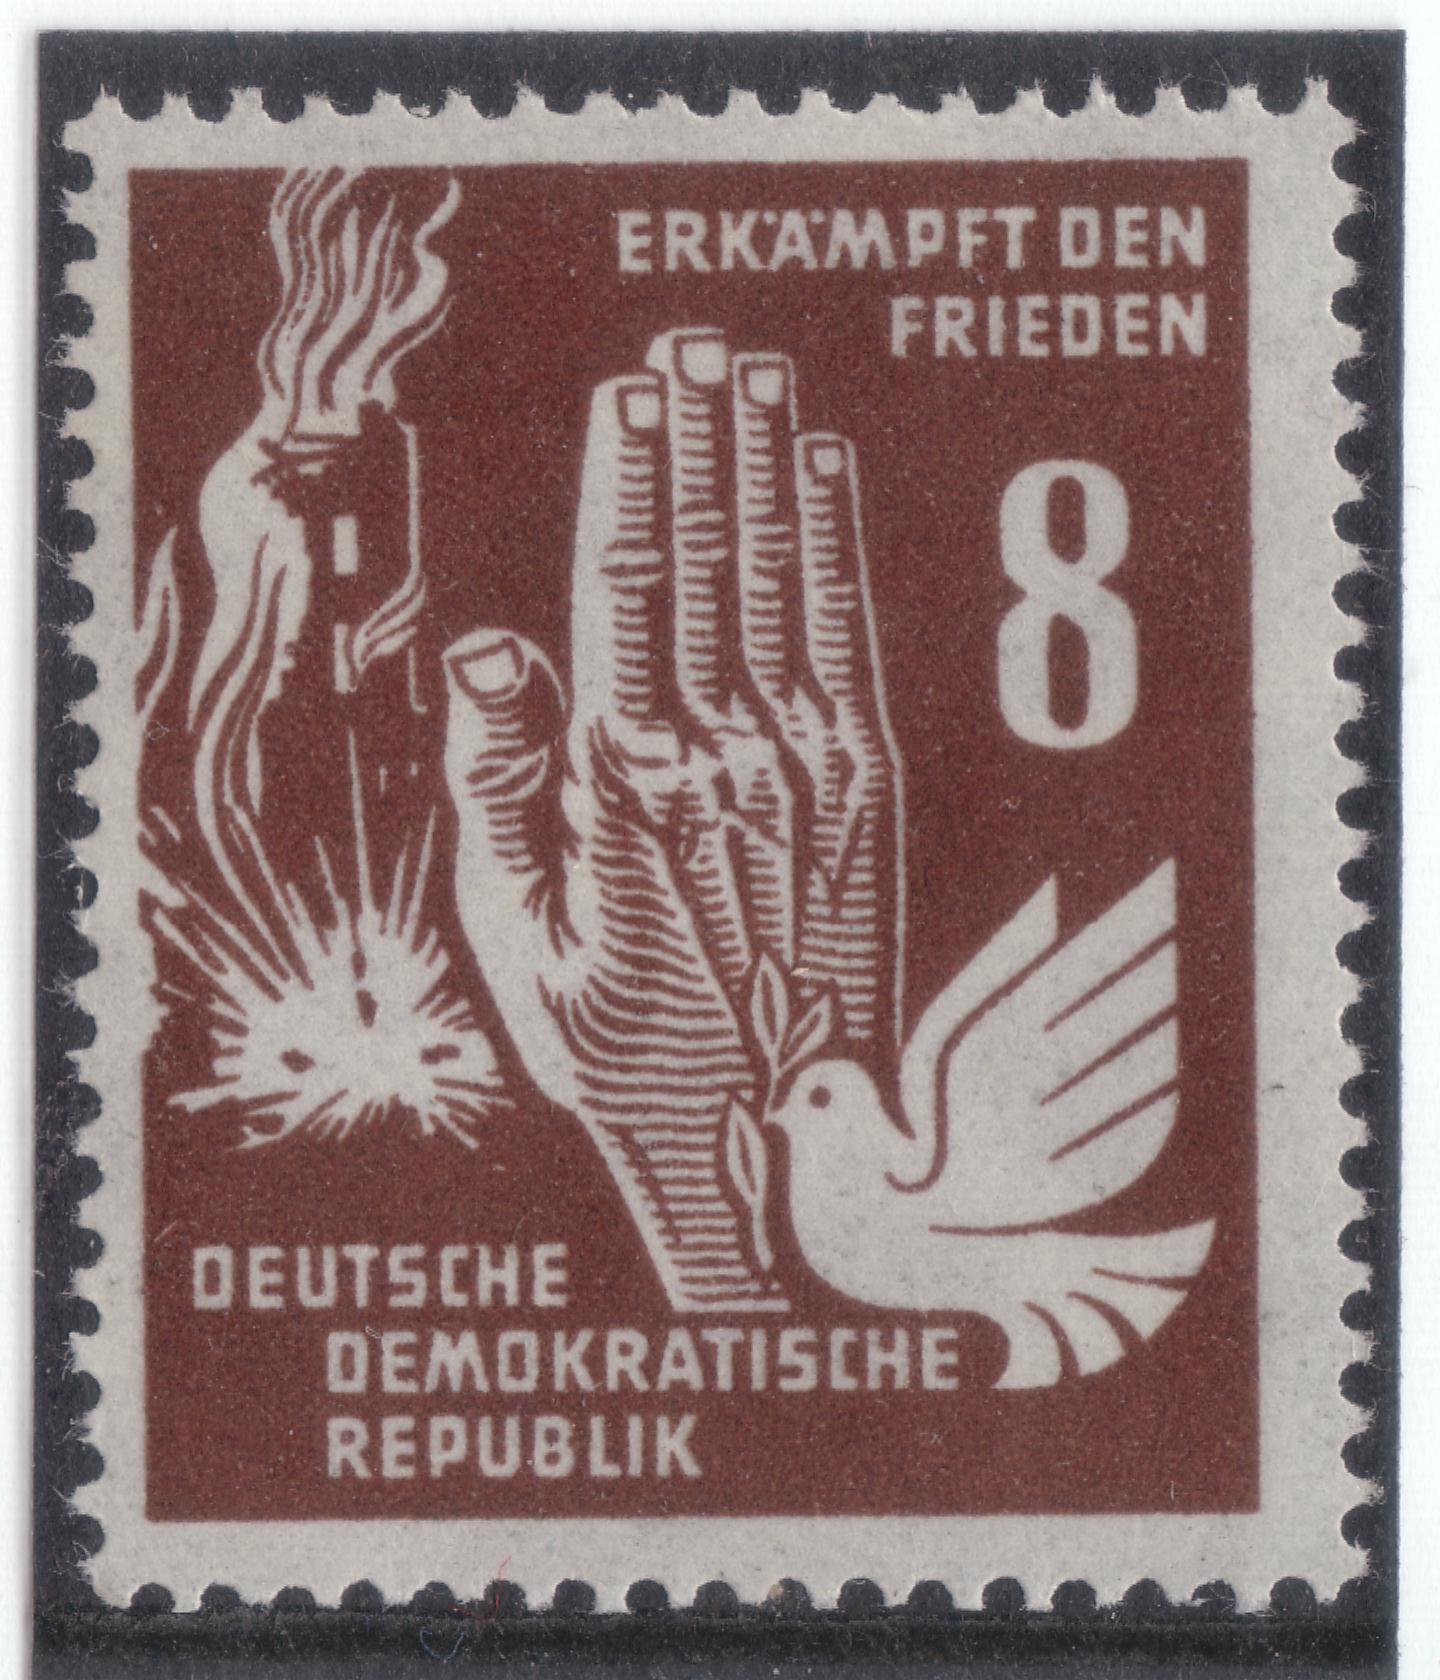 Kampf für Frieden 1950 - Friedenstaube und Hand